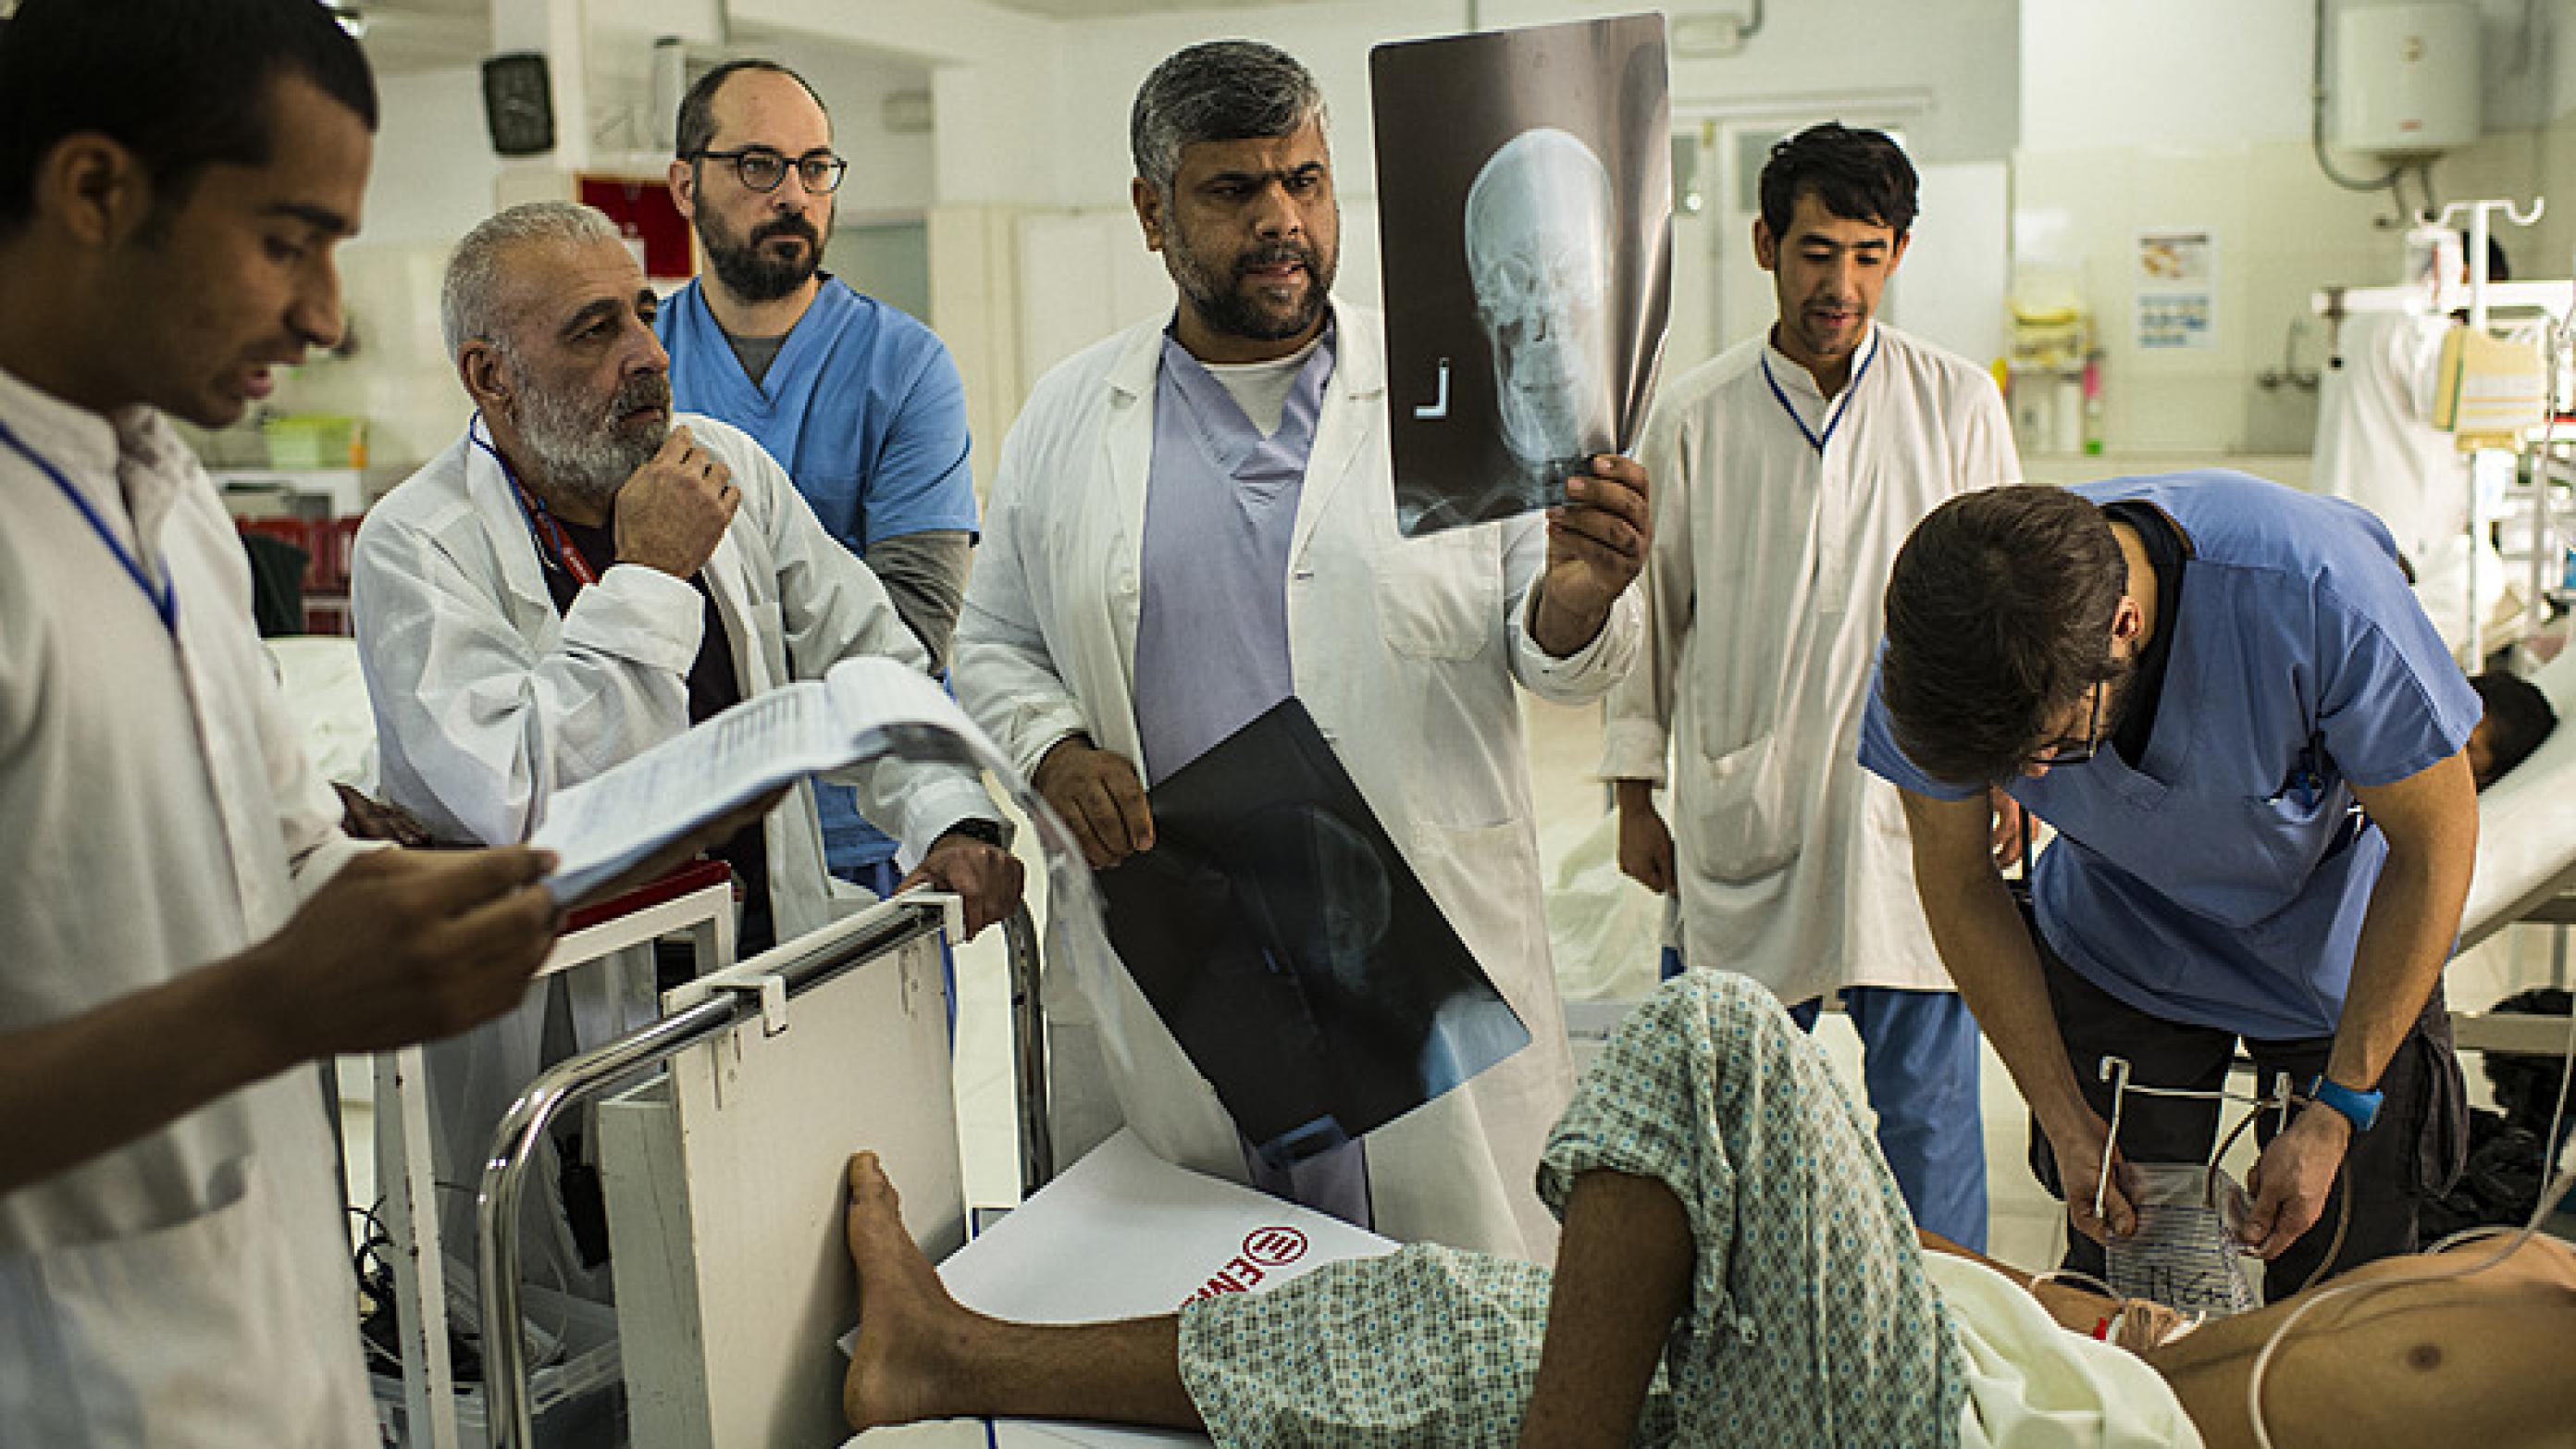 Seniortraumekirurg Dr. Ibrahim Khushal med røntgenbillederne sammen med kollegaerne på hospitalet i Lashkar Gah i Afghanistan. Foto: Andrew Quilty